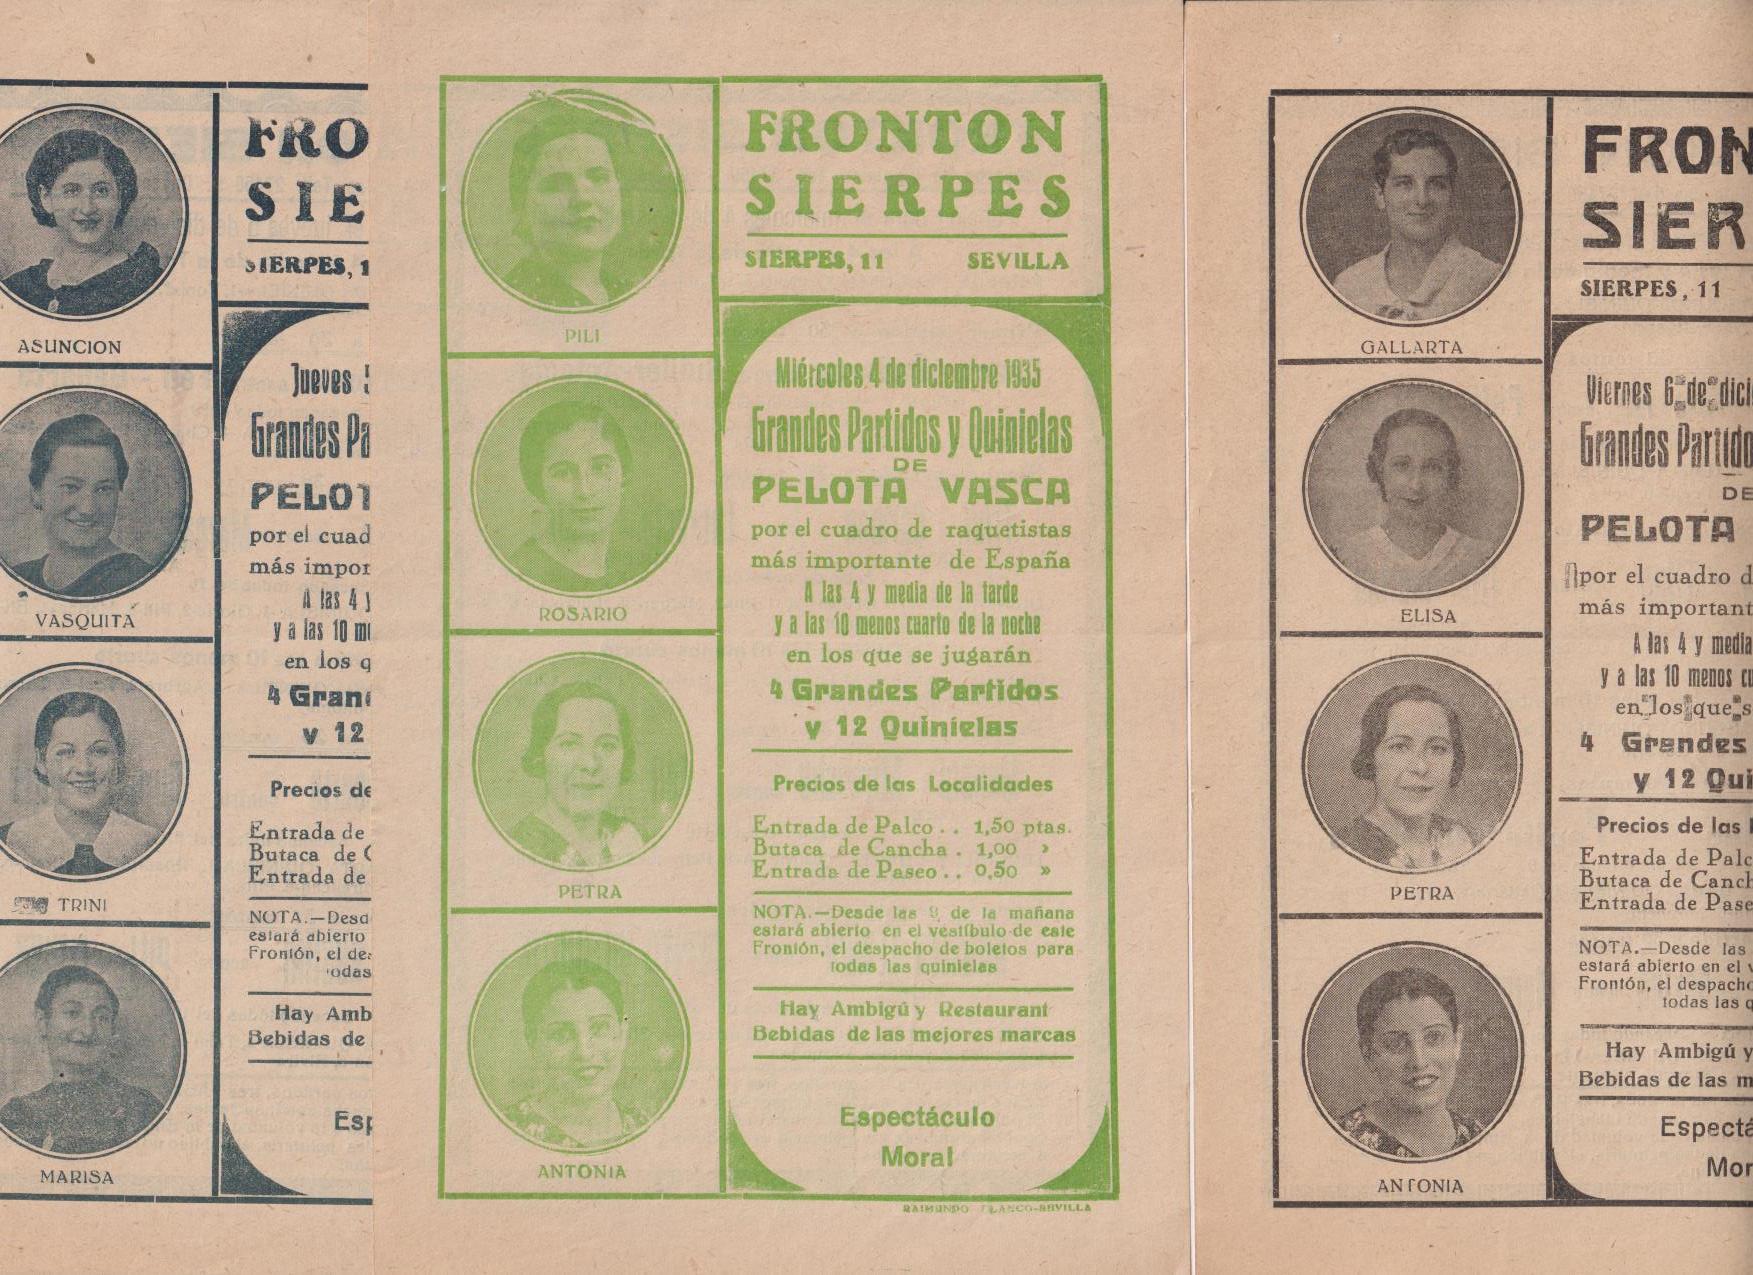 Frontón Sierpes. Lote de 3 Carteles de mano (22x14) Pelota Vasca. 4, 5 y 6 Enero 1935. Sevilla